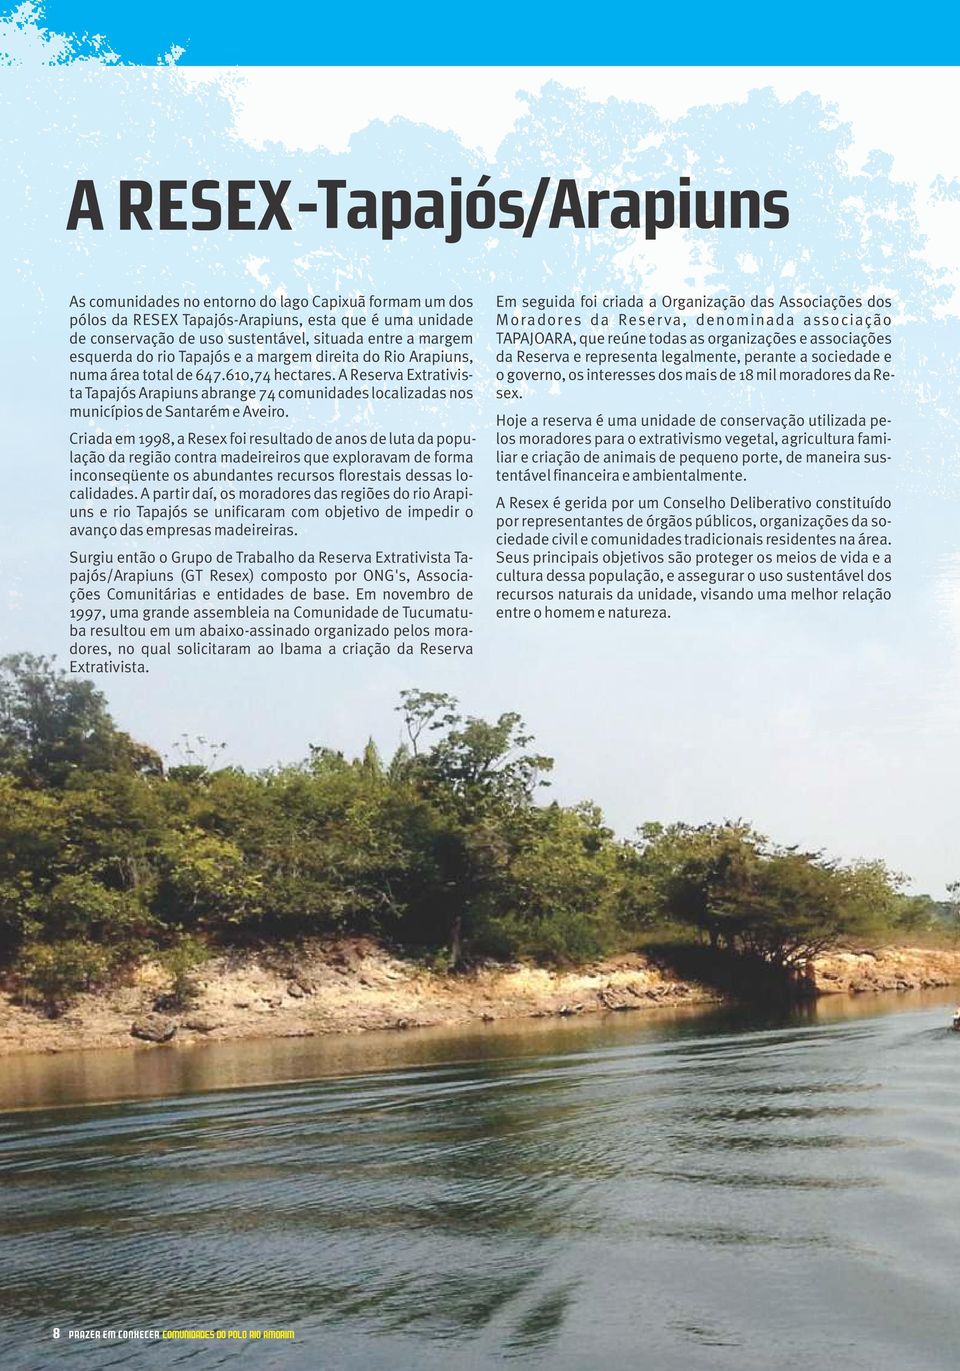 Criada em 1998, a Resex foi resultado de anos de luta da população da região contra madeireiros que exploravam de forma inconseqüente os abundantes recursos florestais dessas localidades.